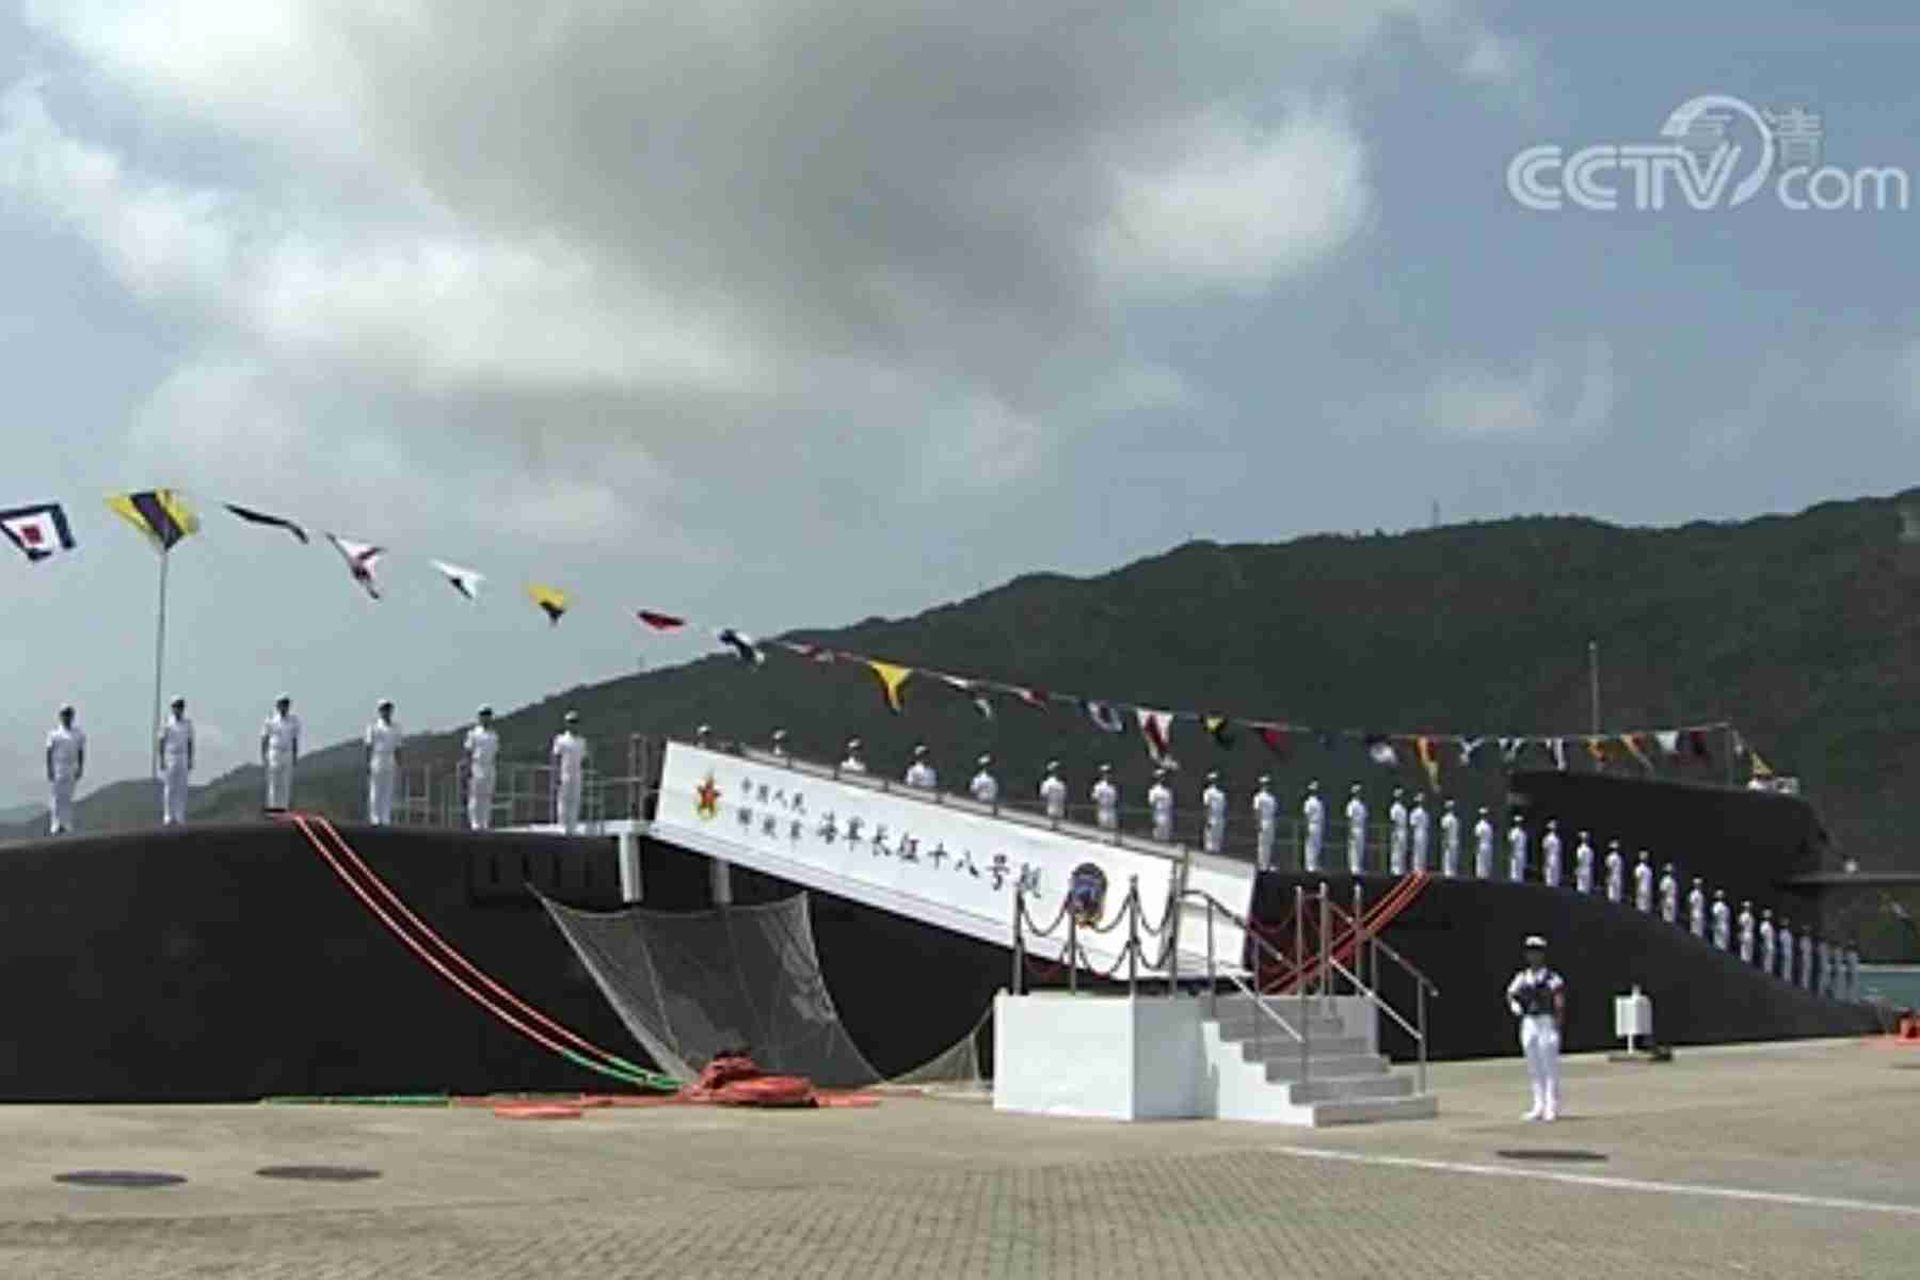 中国央视新闻公开入列现场画面。图为中国海军官兵在舷号“421”的长征18号艇上。（中国央视截图）